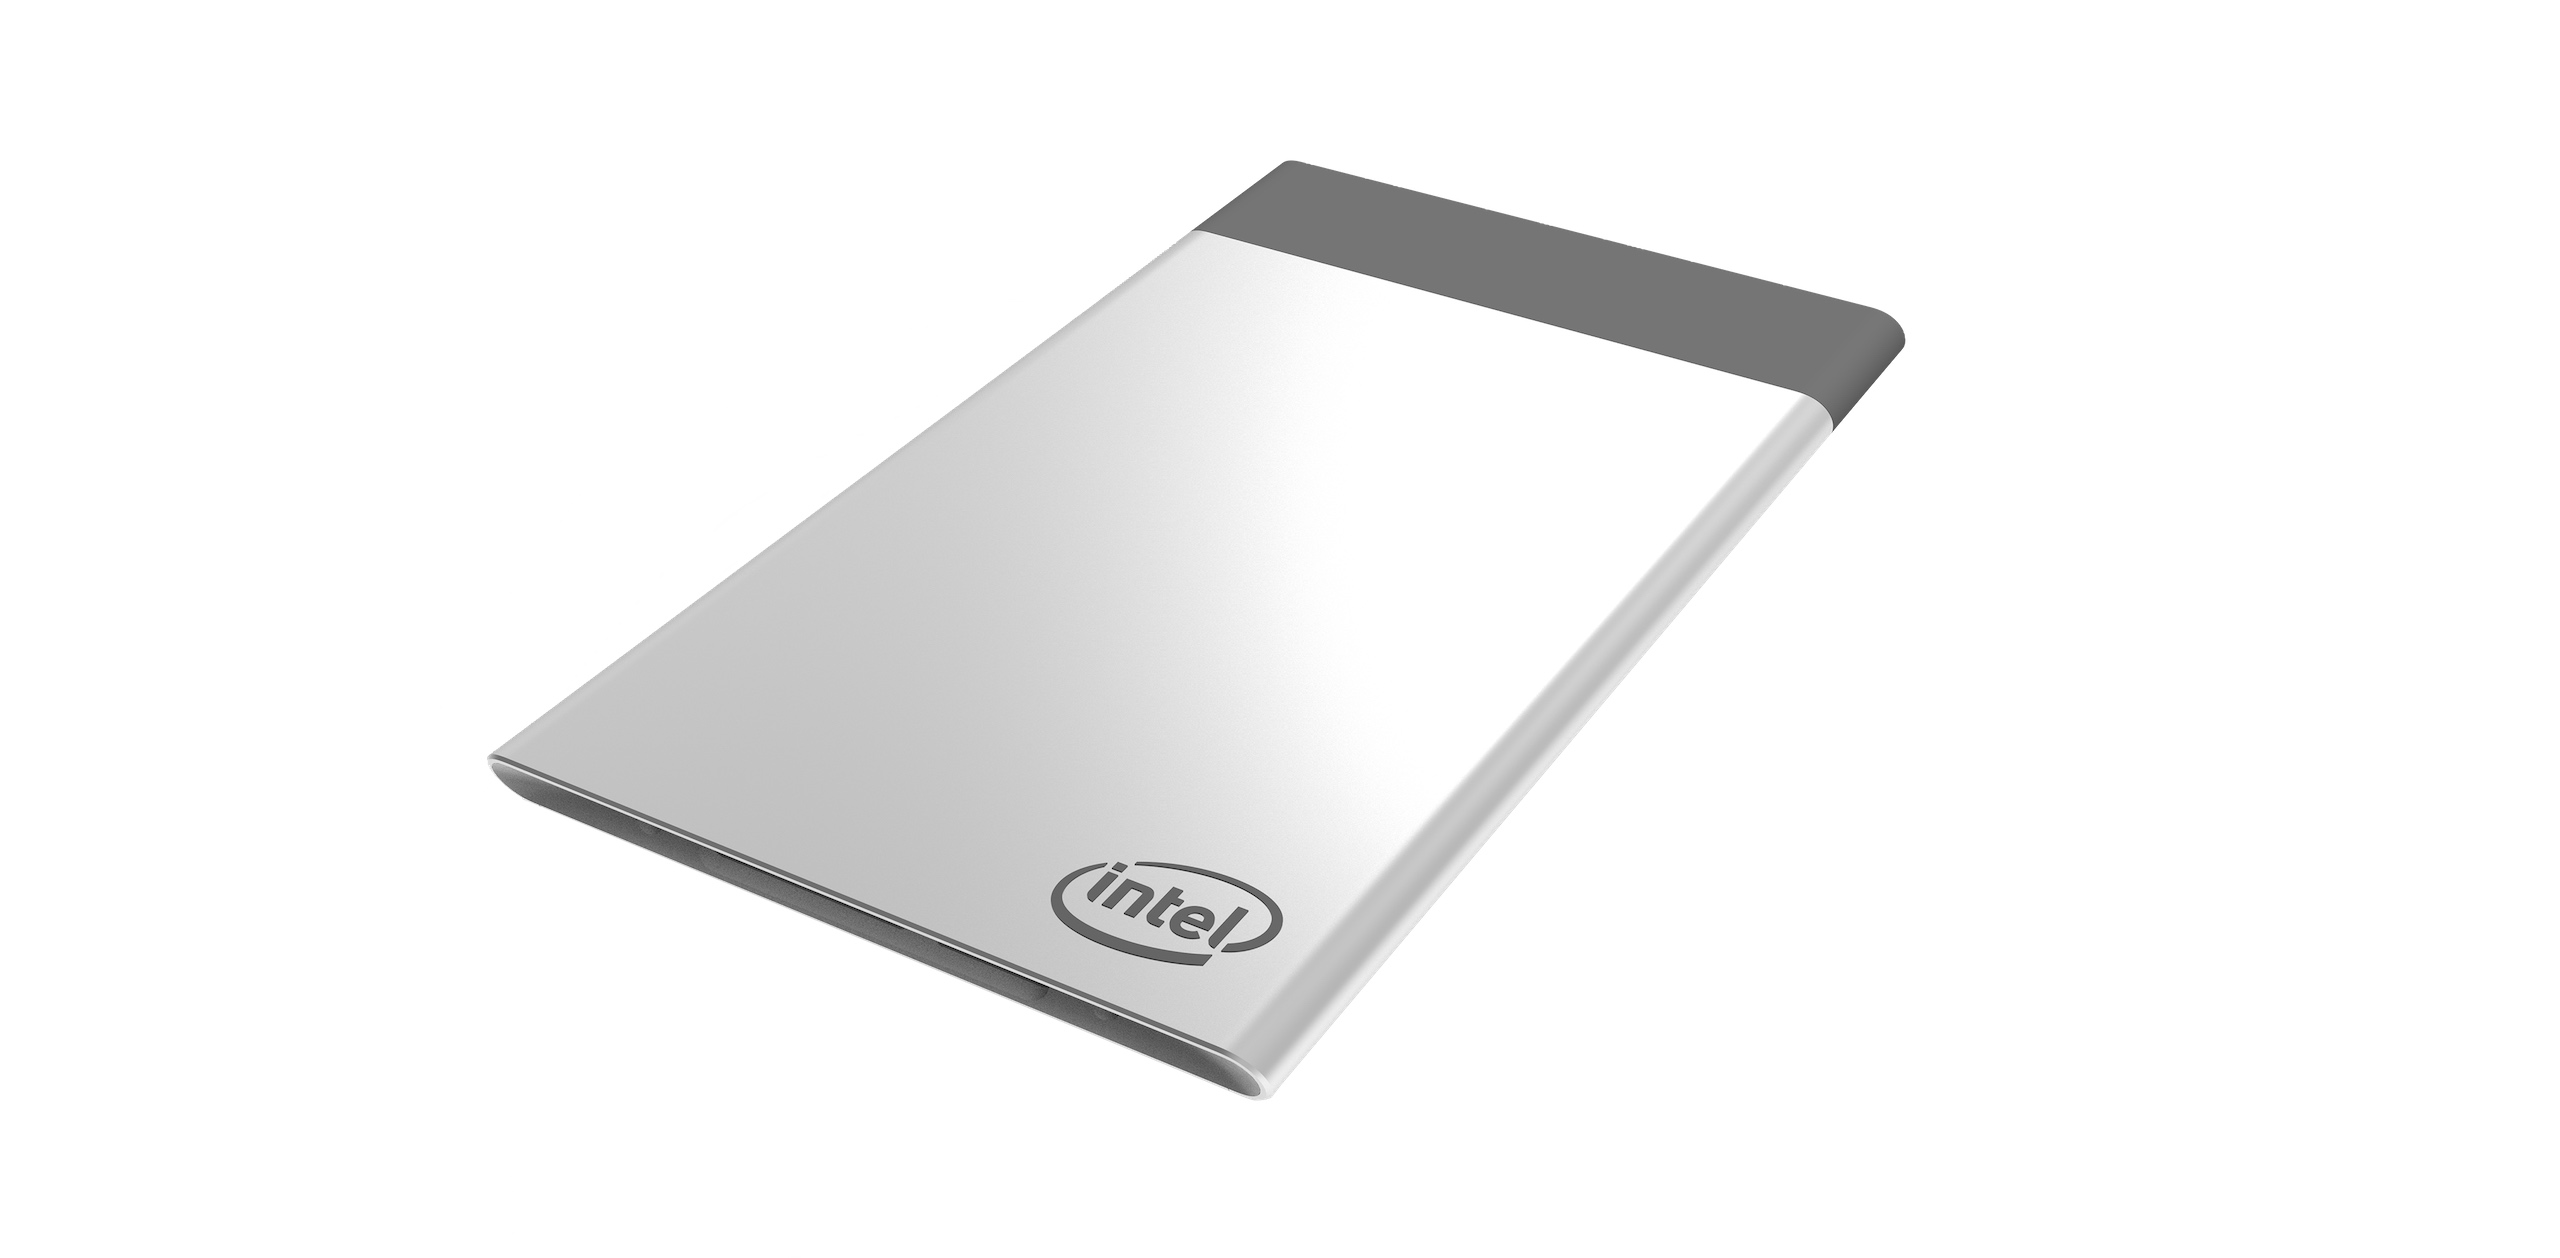 Intel Compute Card er på størrelsen med et kredittkort, og er 5 mm tykt. Det skal gjre det enklere å oppgradere tingenes Internett-gjenstander.